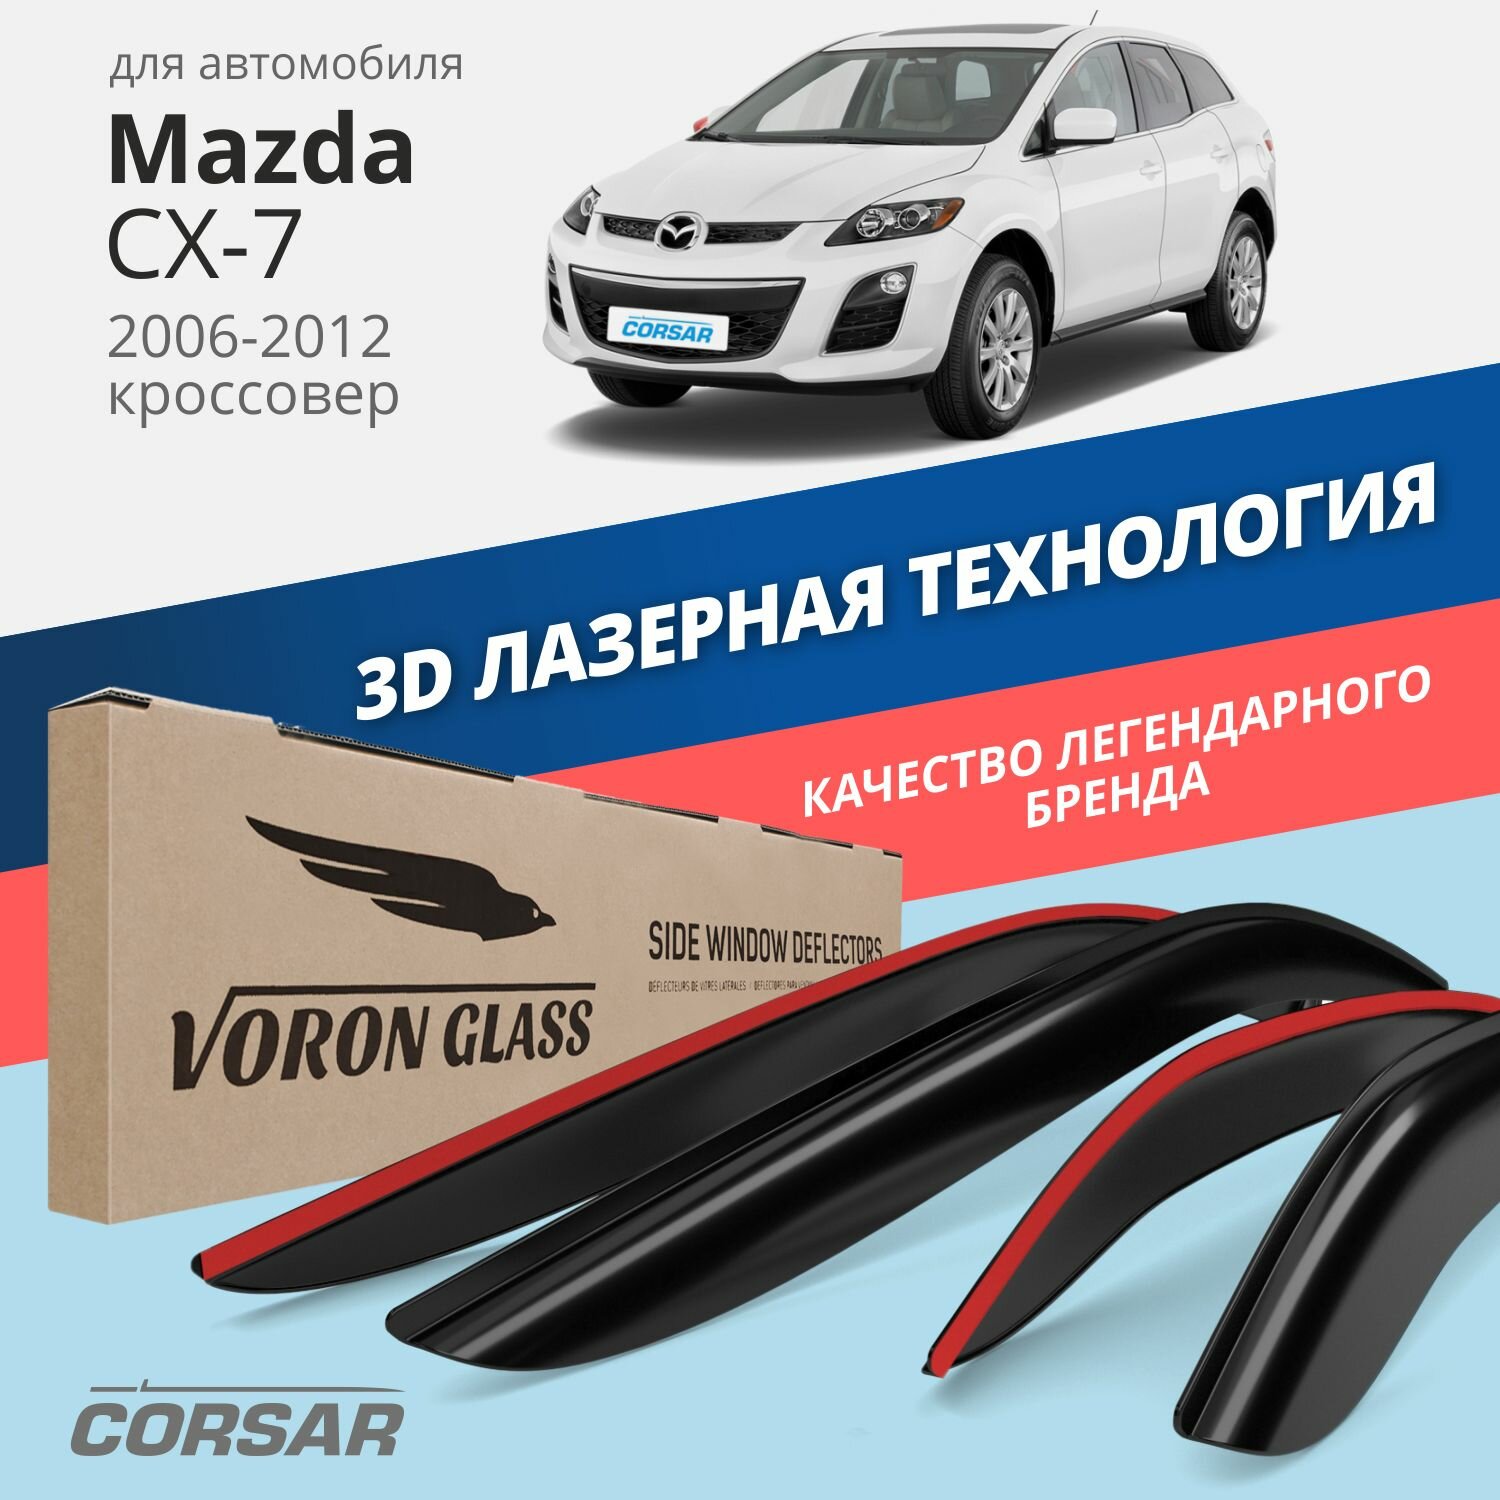 Дефлекторы окон Voron Glass серия Corsar для автомобиля Mazda CX-7 2006-2012 накладные 4 шт.